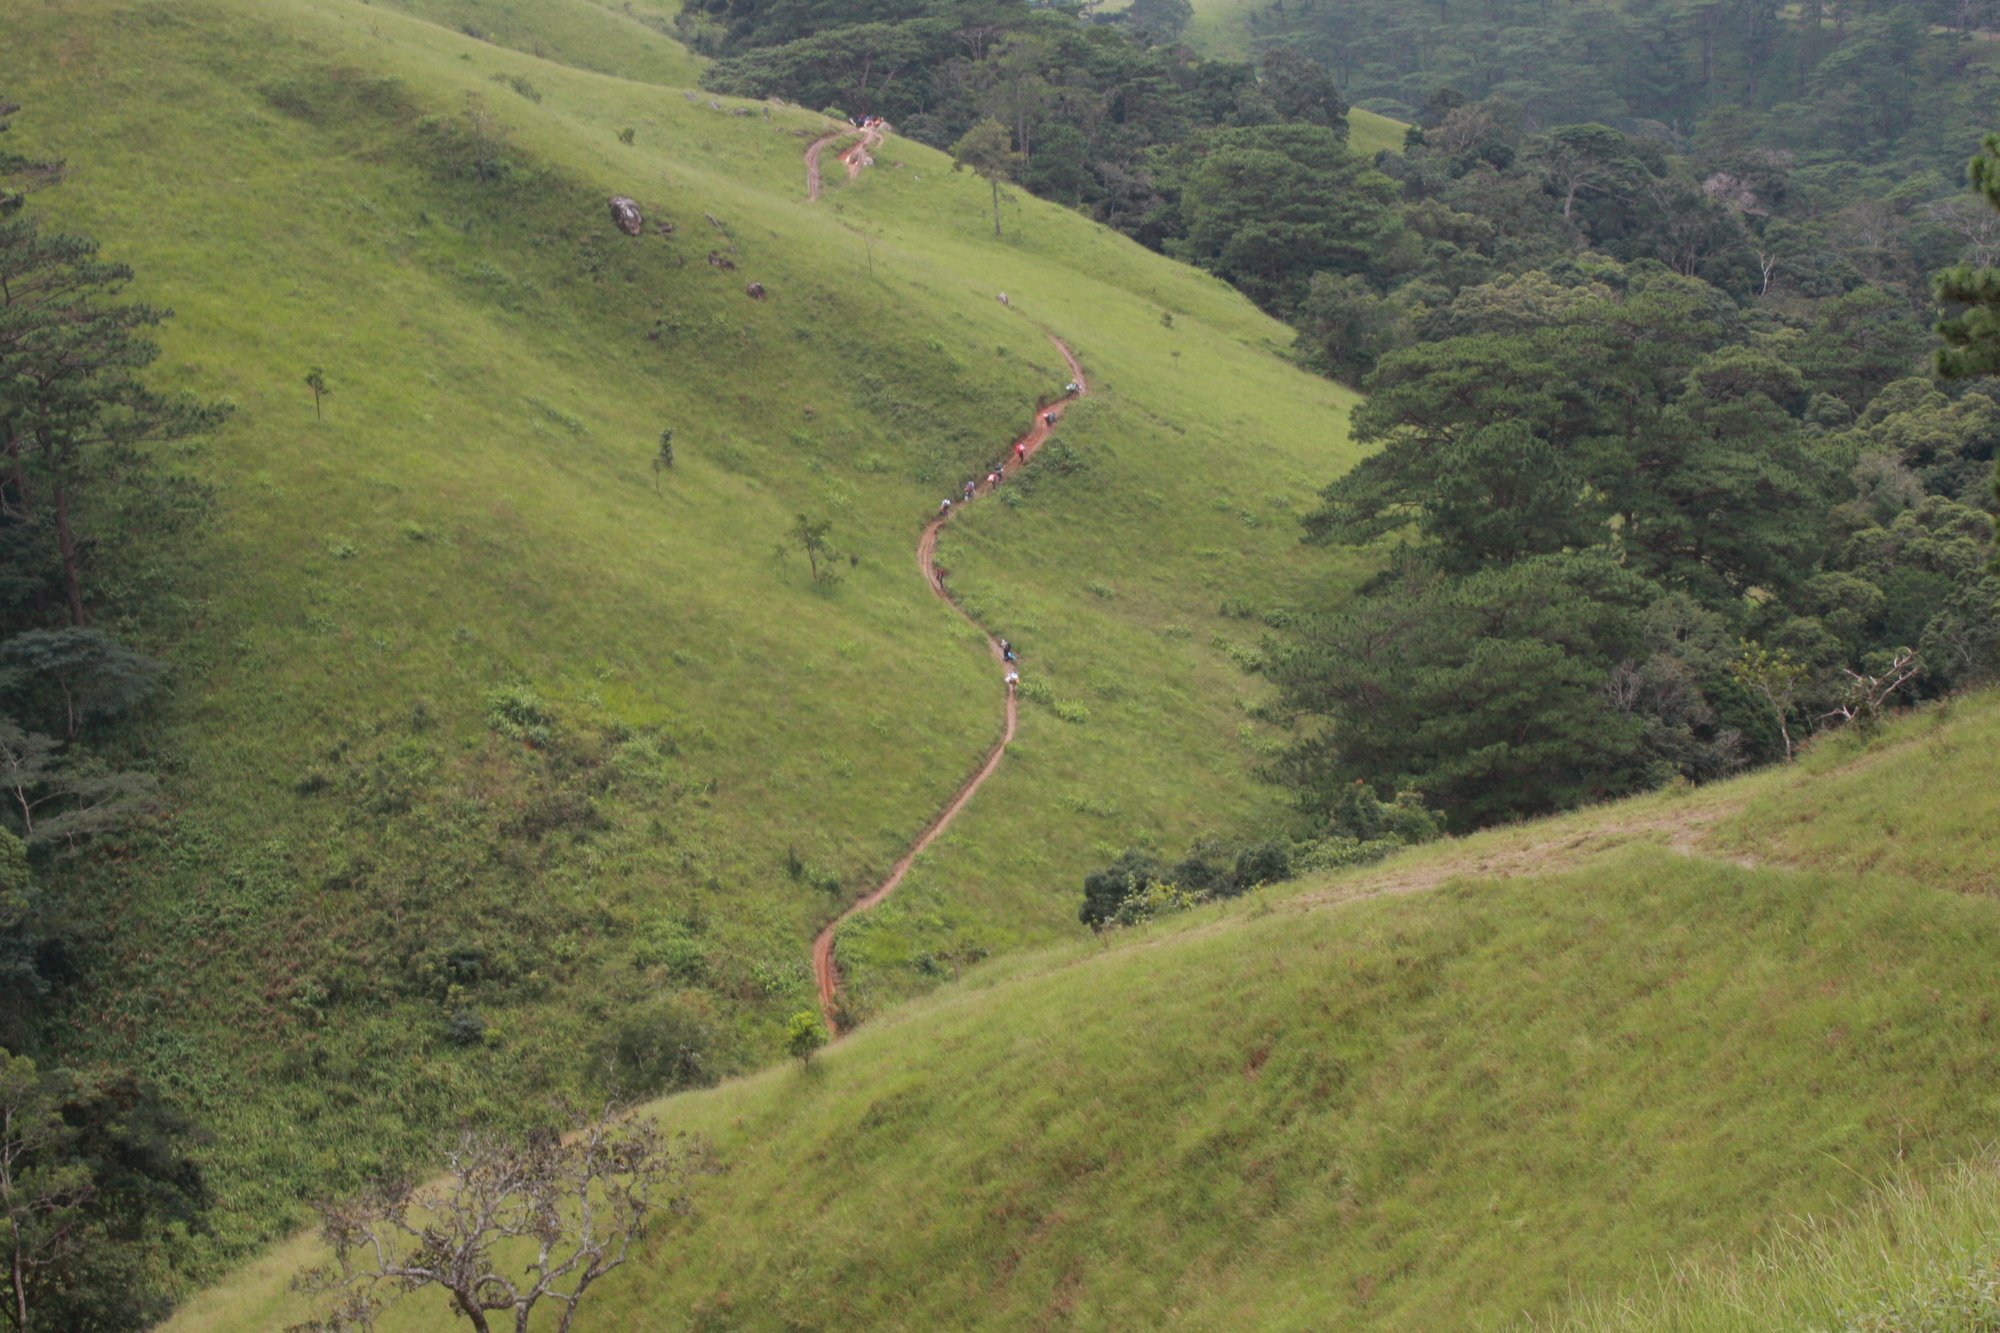 Đoàn người đang trekking men theo sườn đồi trên cung Tà Năng - Phan Dũng